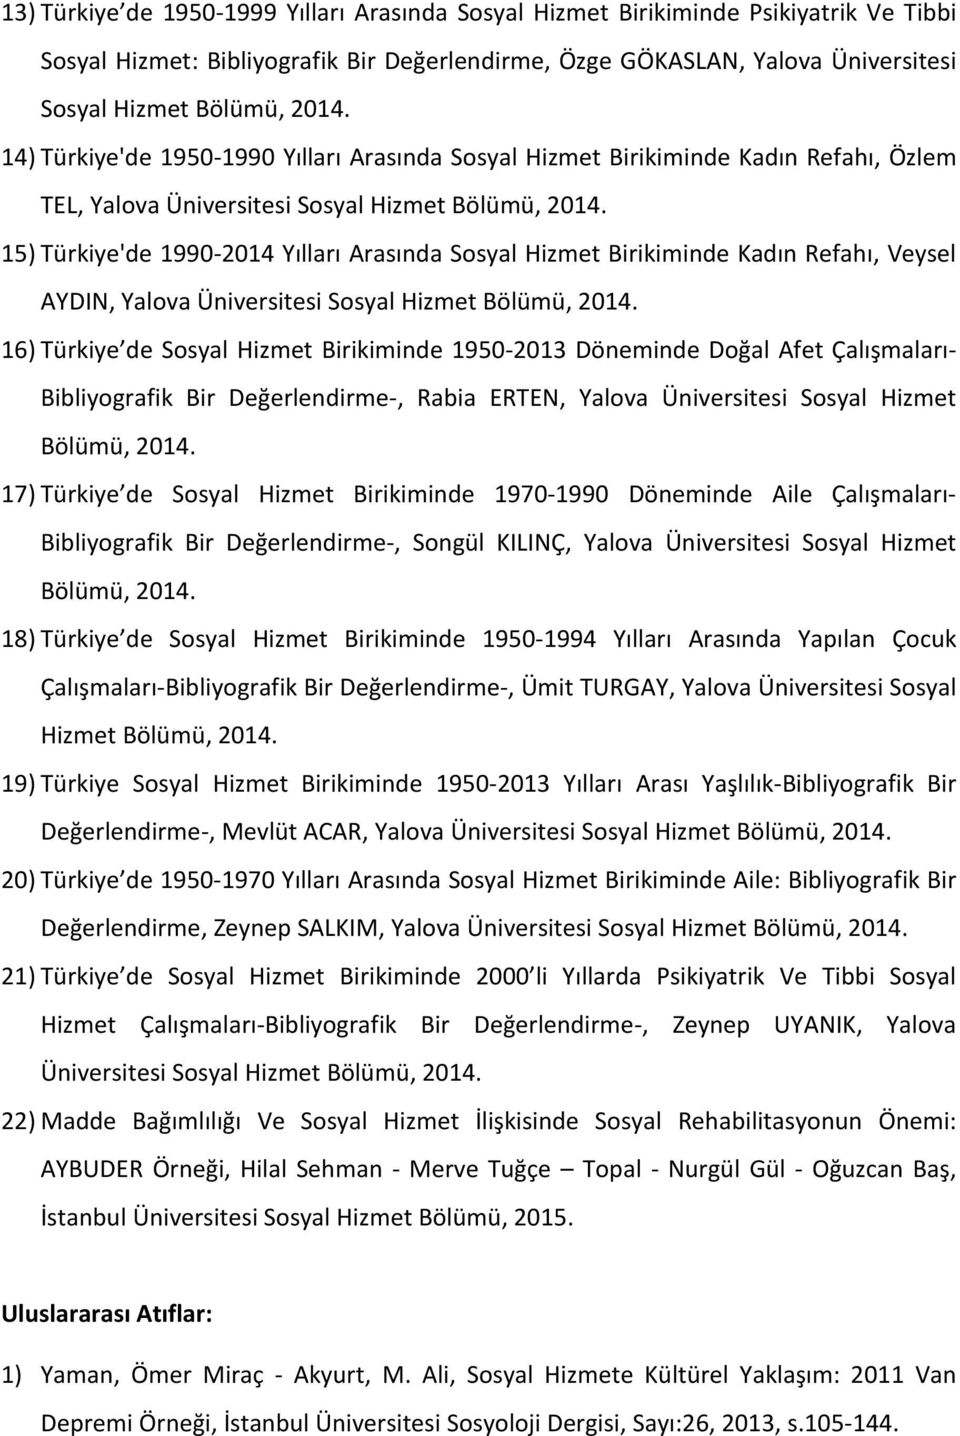 15) Türkiye'de 1990-2014 Yılları Arasında Sosyal Hizmet Birikiminde Kadın Refahı, Veysel AYDIN, Yalova Üniversitesi Sosyal Hizmet Bölümü, 2014.